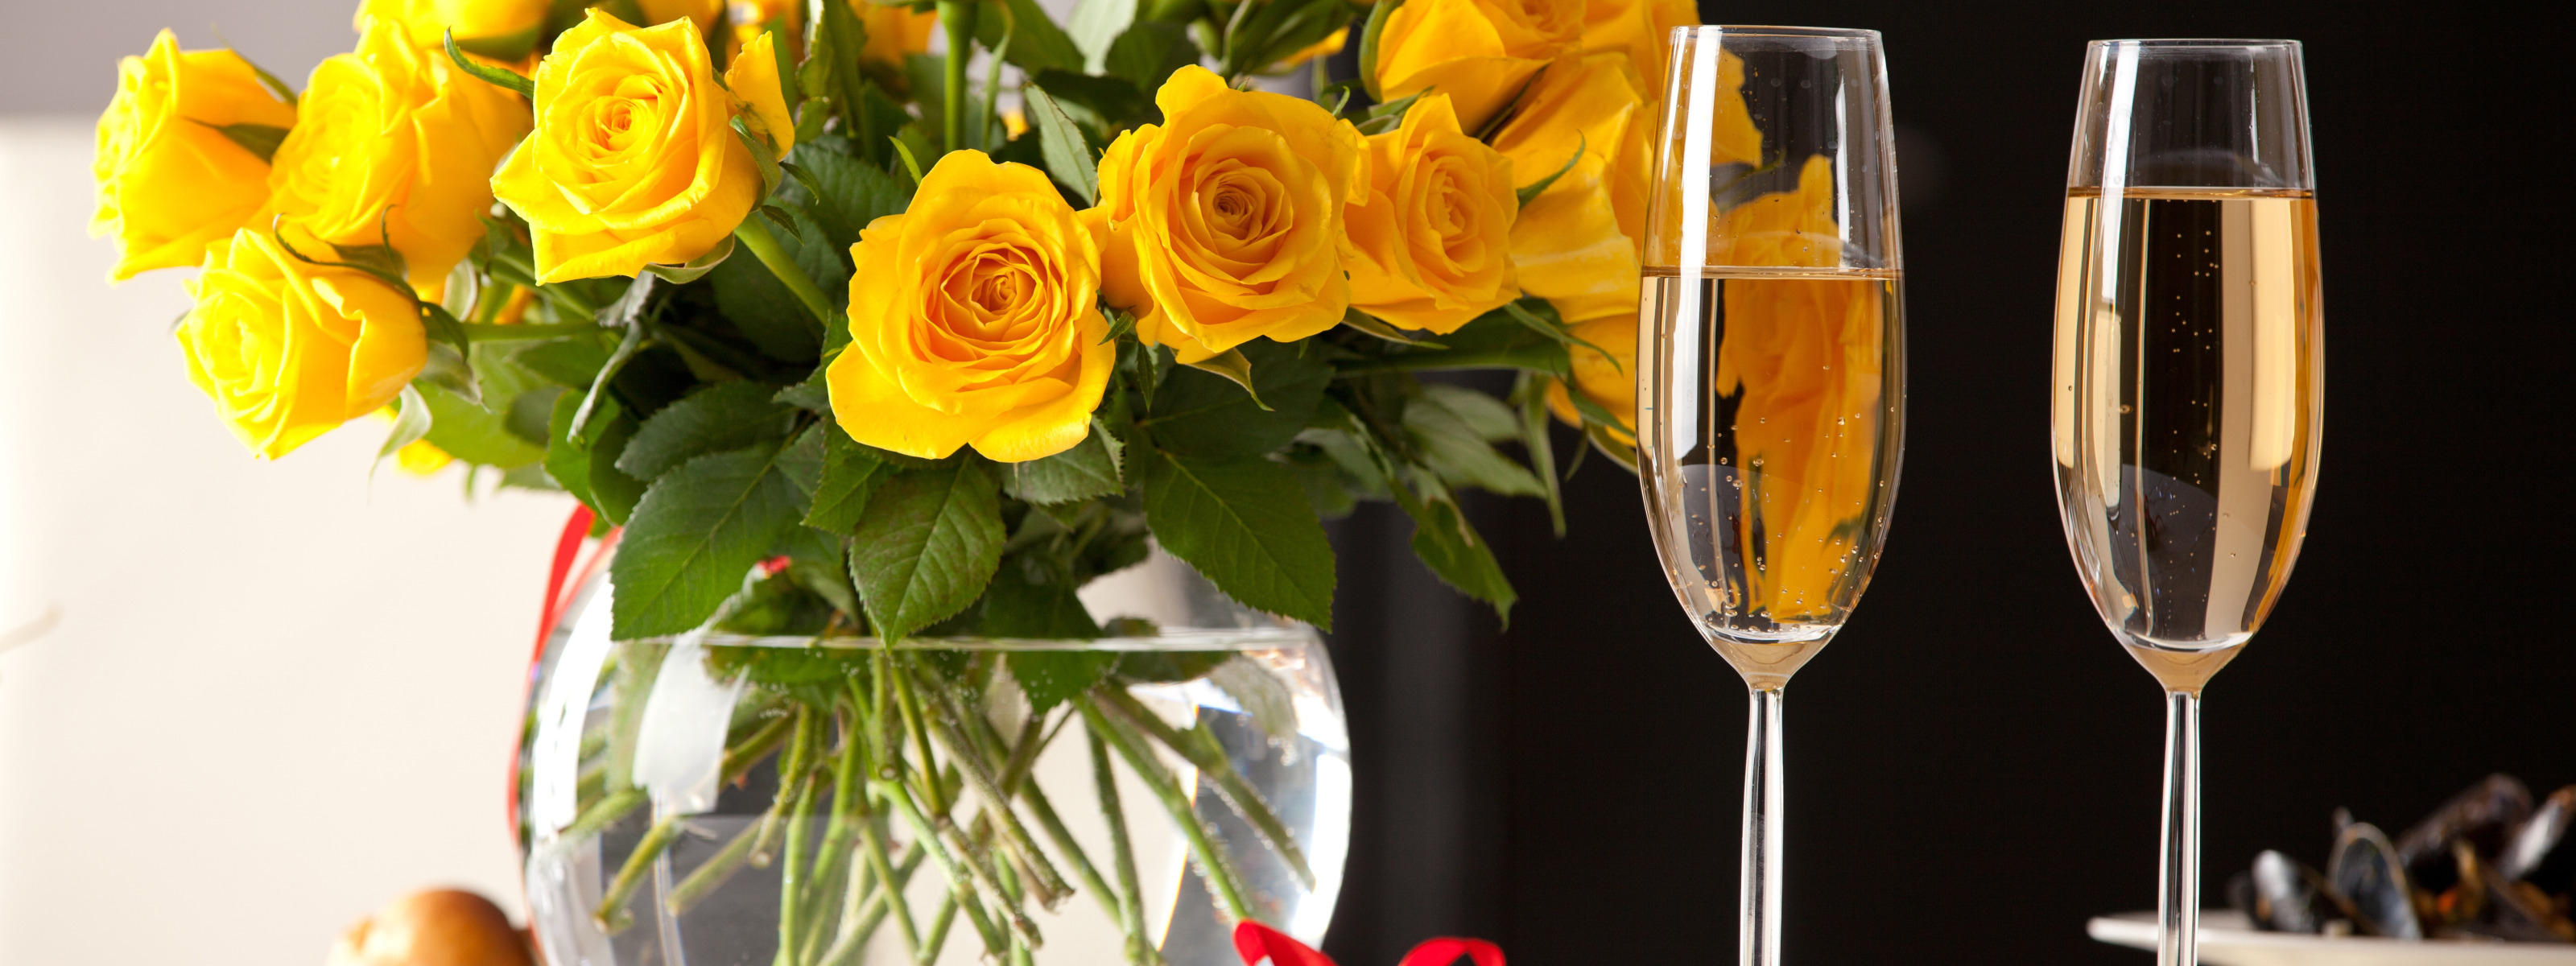 Шампанское и розы 69. Цветы в бокале. Бокалы с шампанским. Цветы и шампанское. Красивые цветы в бокале.